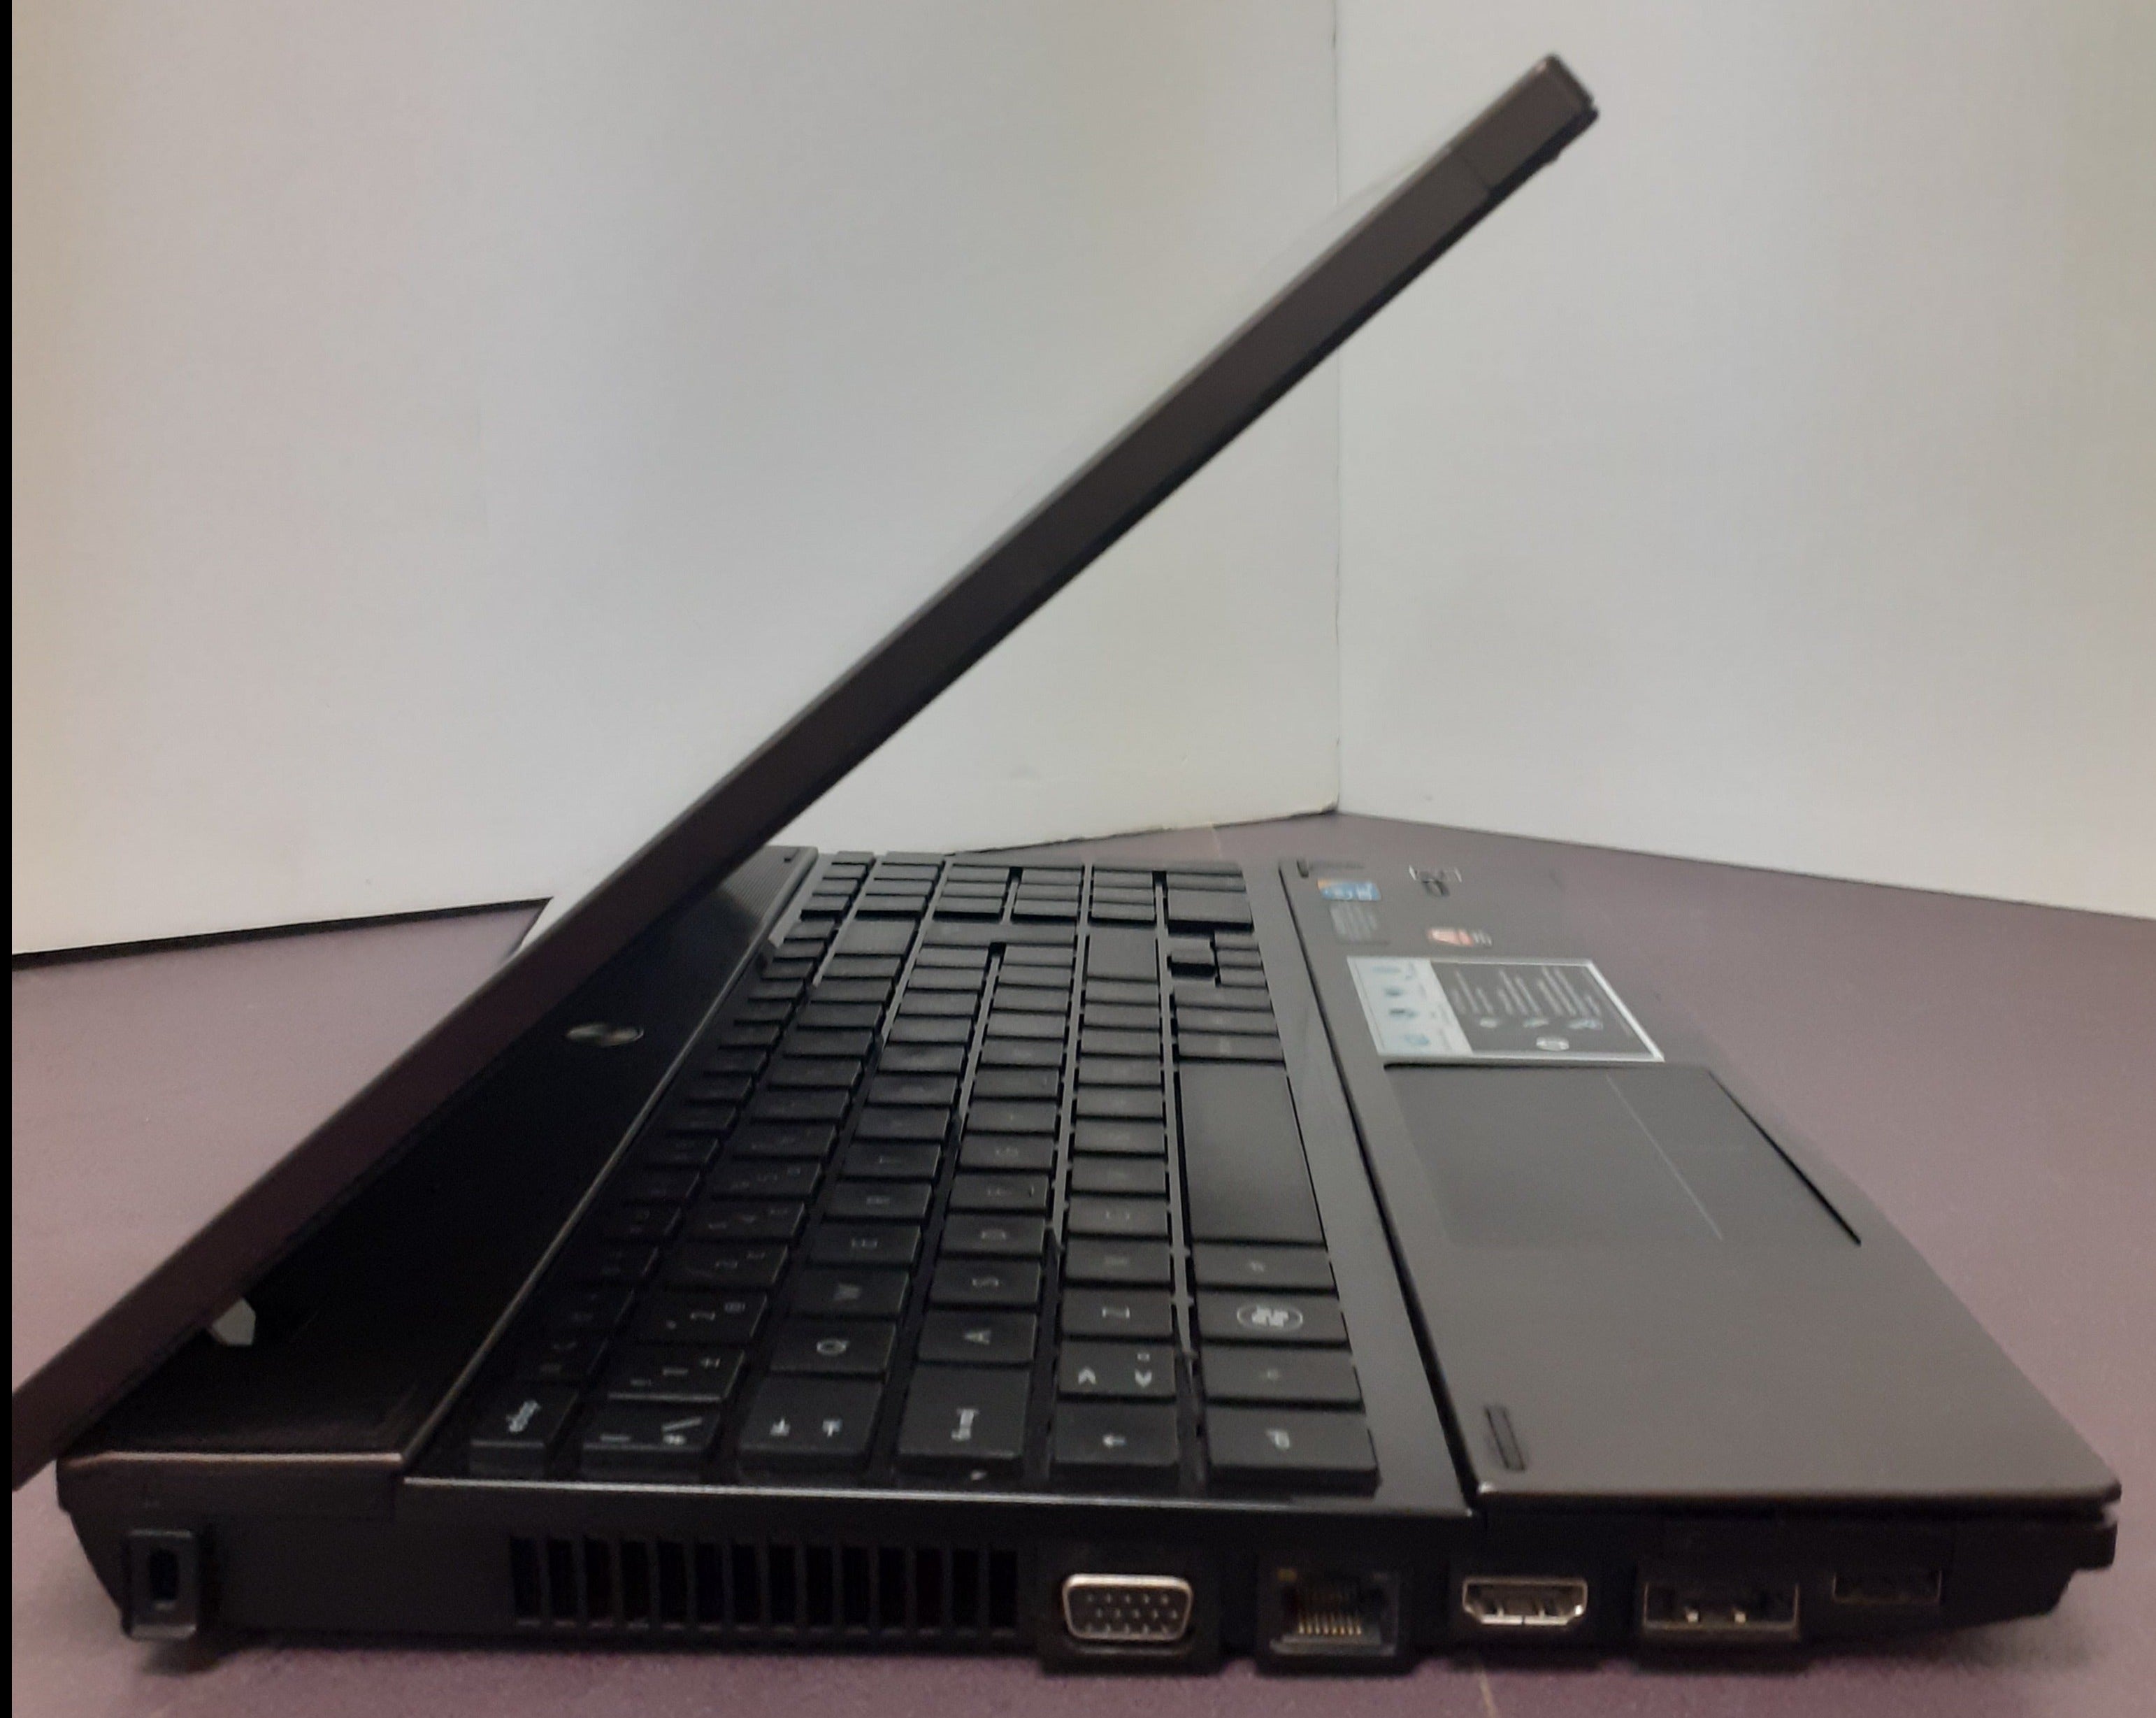 Refurbished Laptop - HP ProBook 4520s